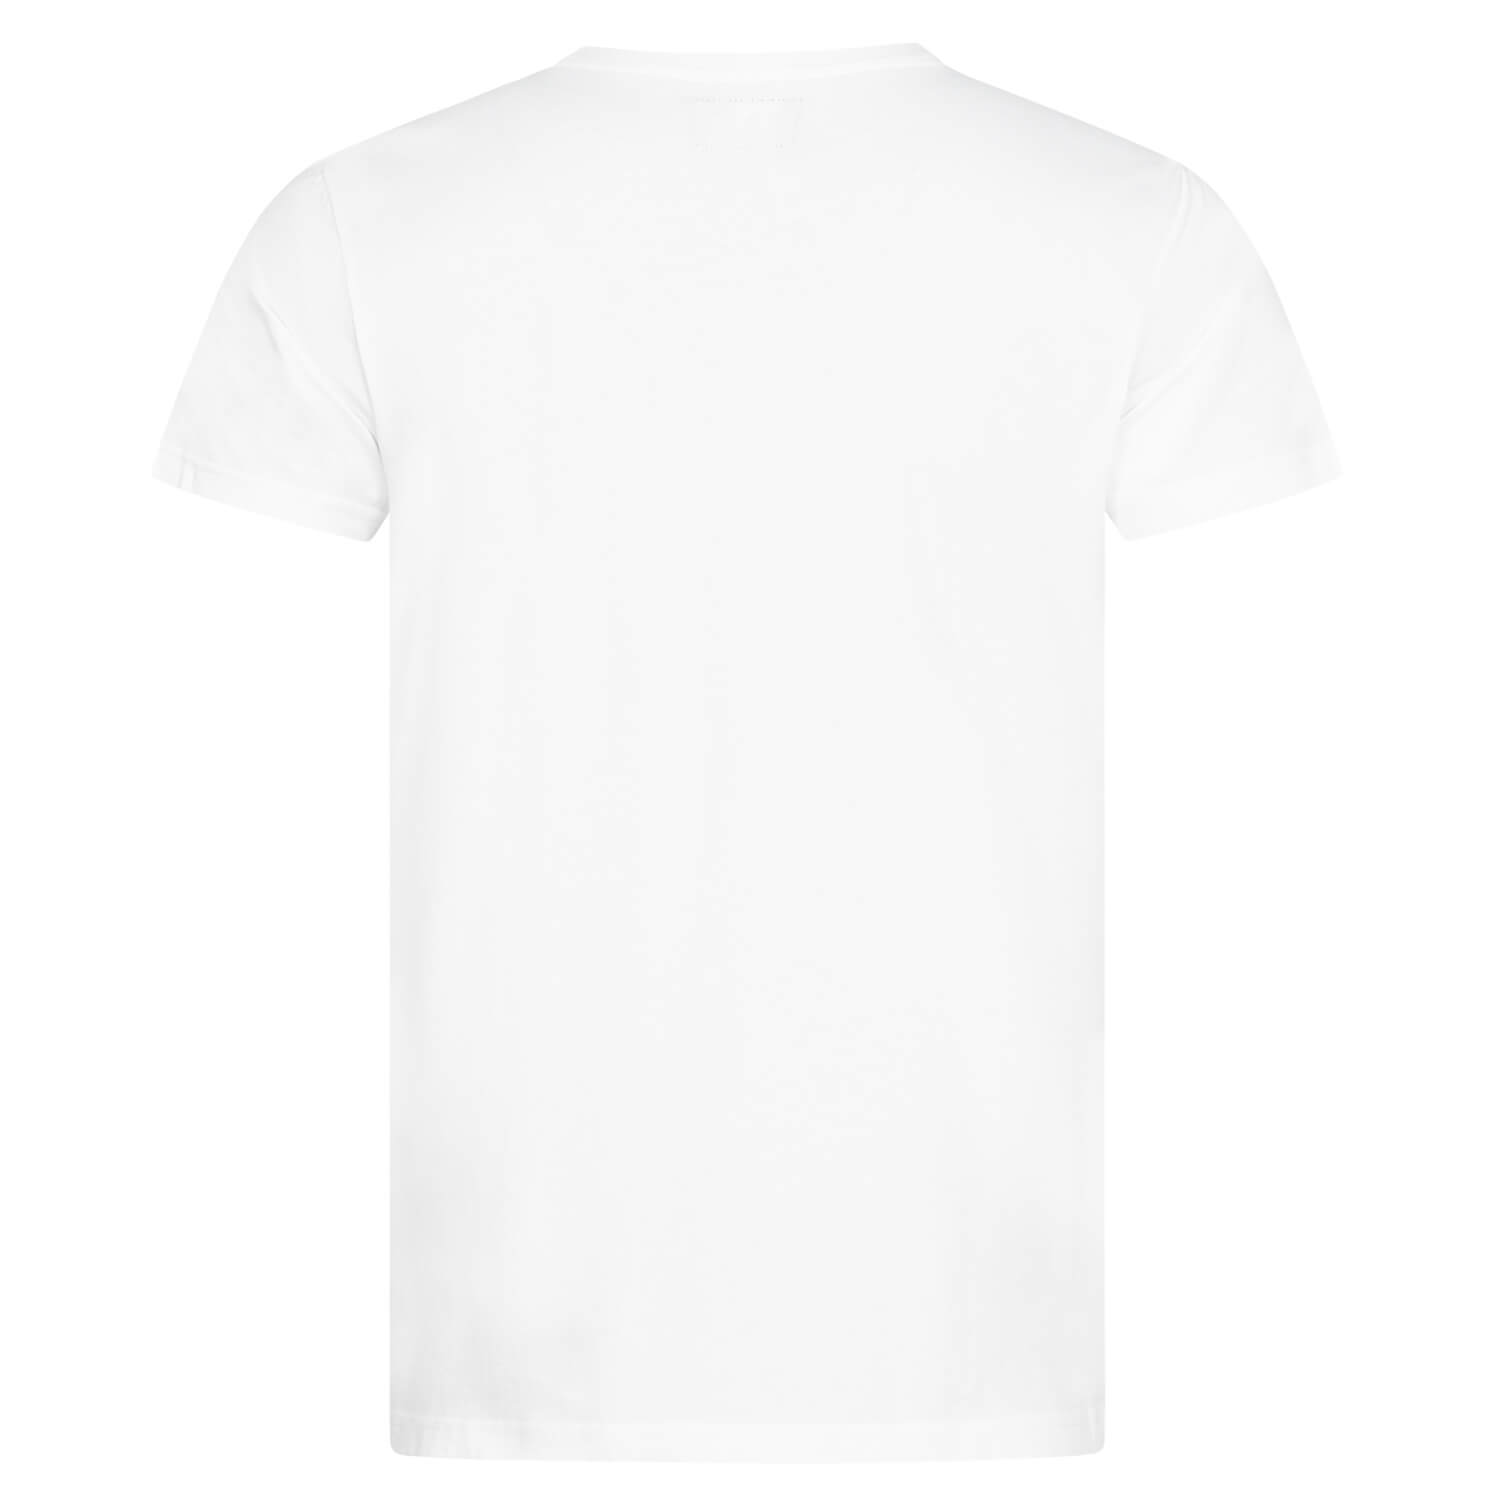 Bild 2: T-Shirt 125 Years Logo White